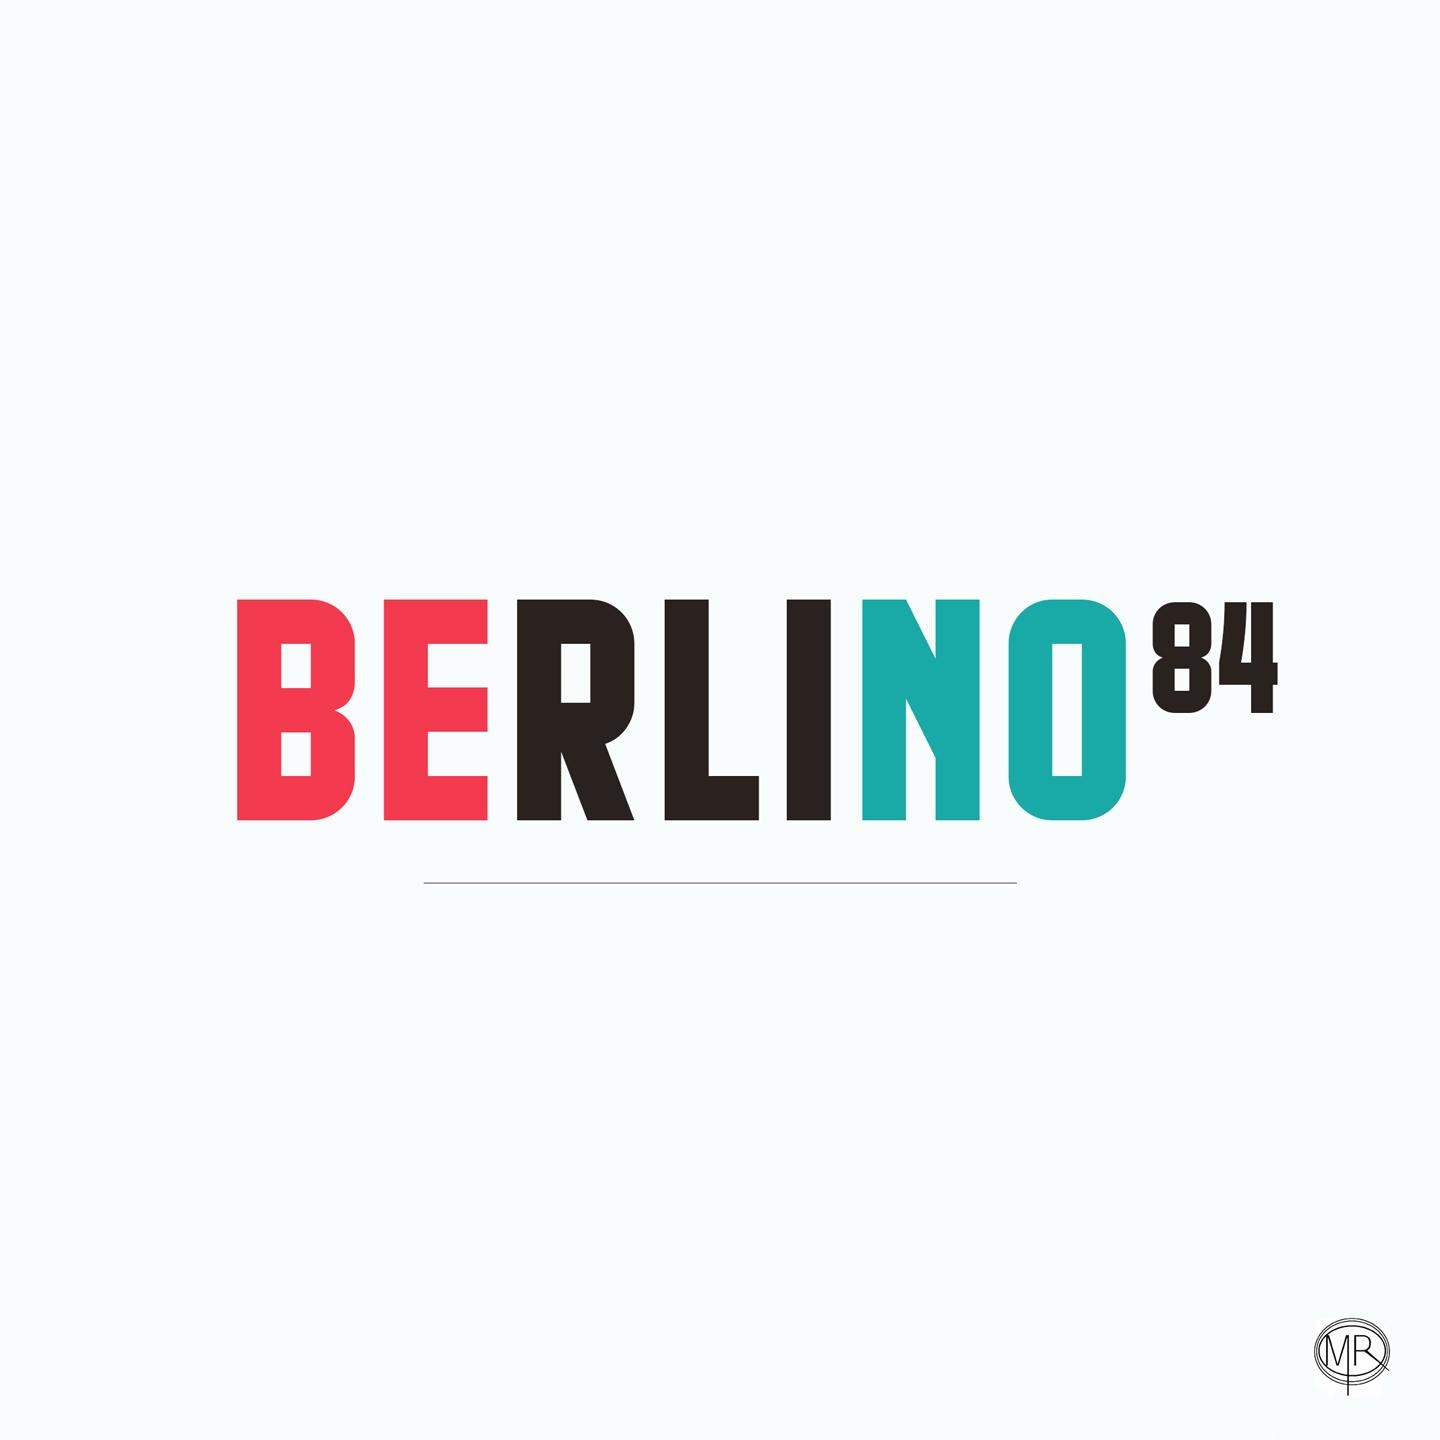 Berlino84 “Sotto la pioggia” è il singolo indie-pop del cantautore avellinese nato a basilea